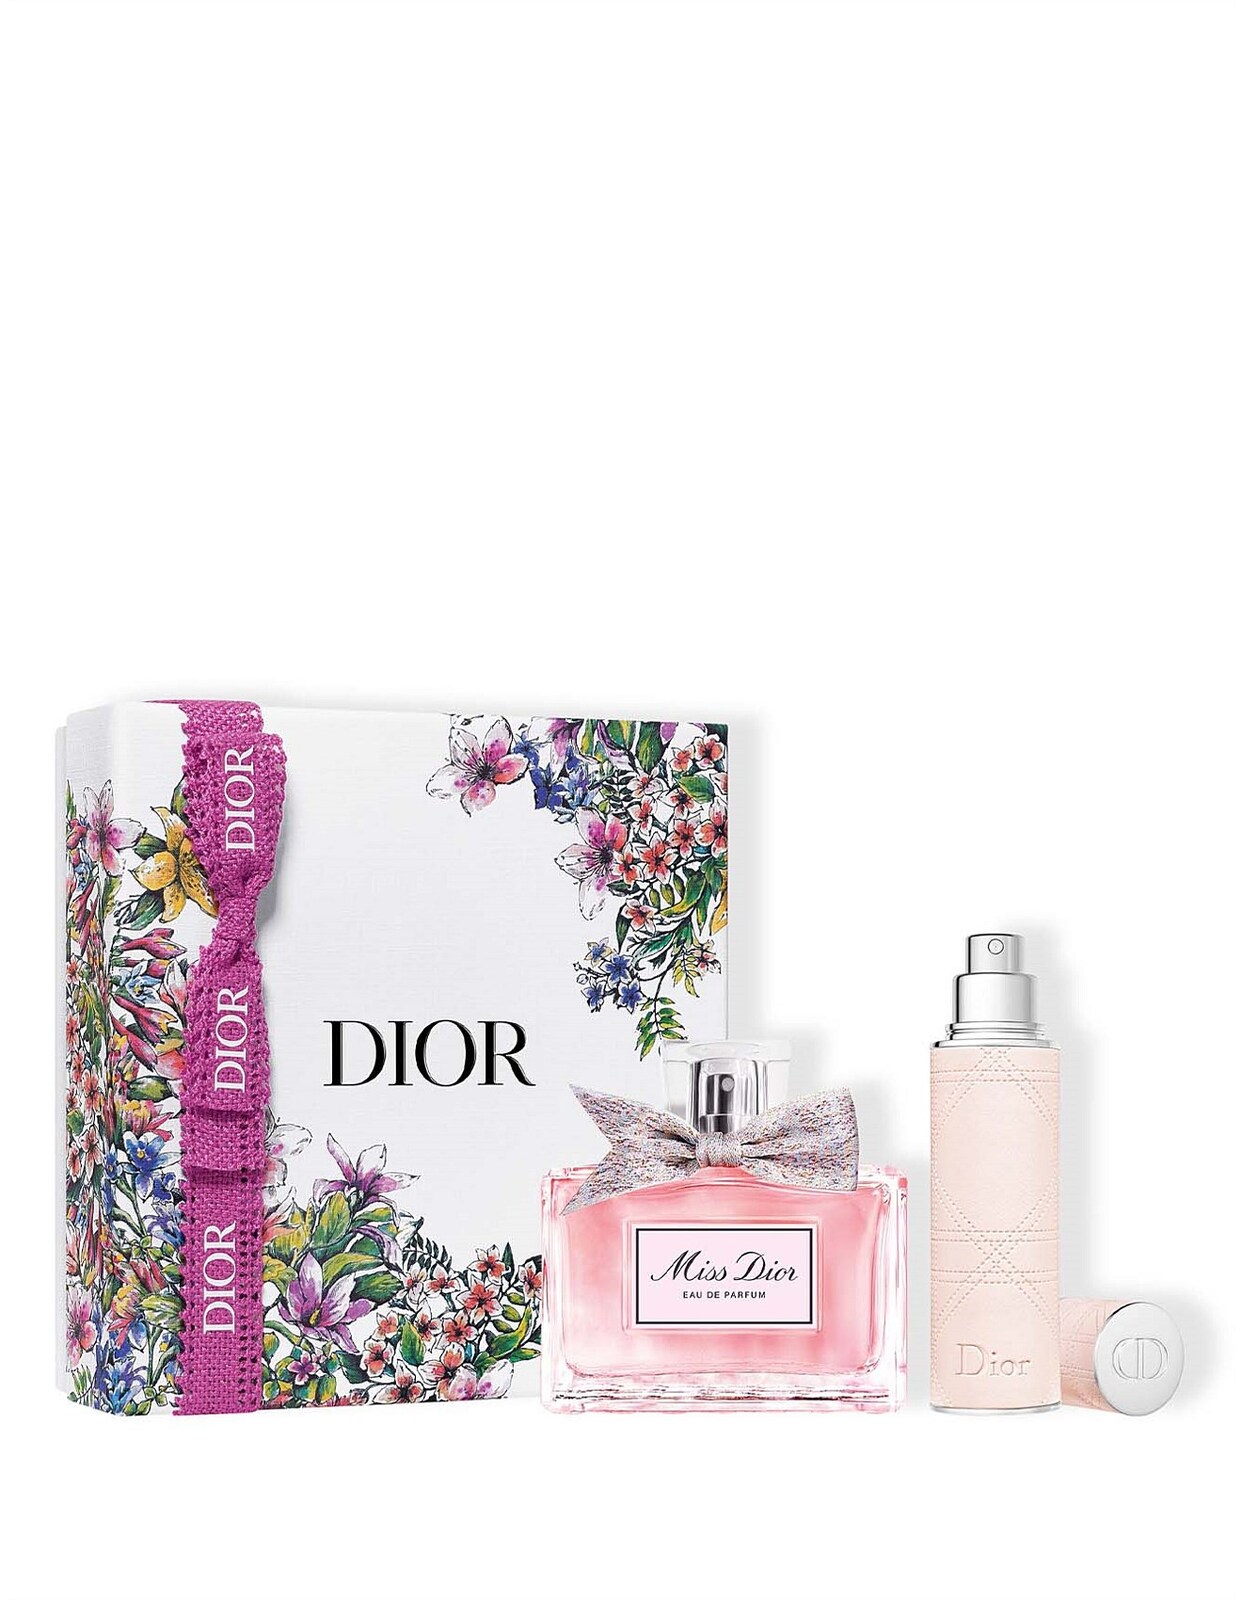 Dior Miss Dior EDP 50ml Valentines Gift Set